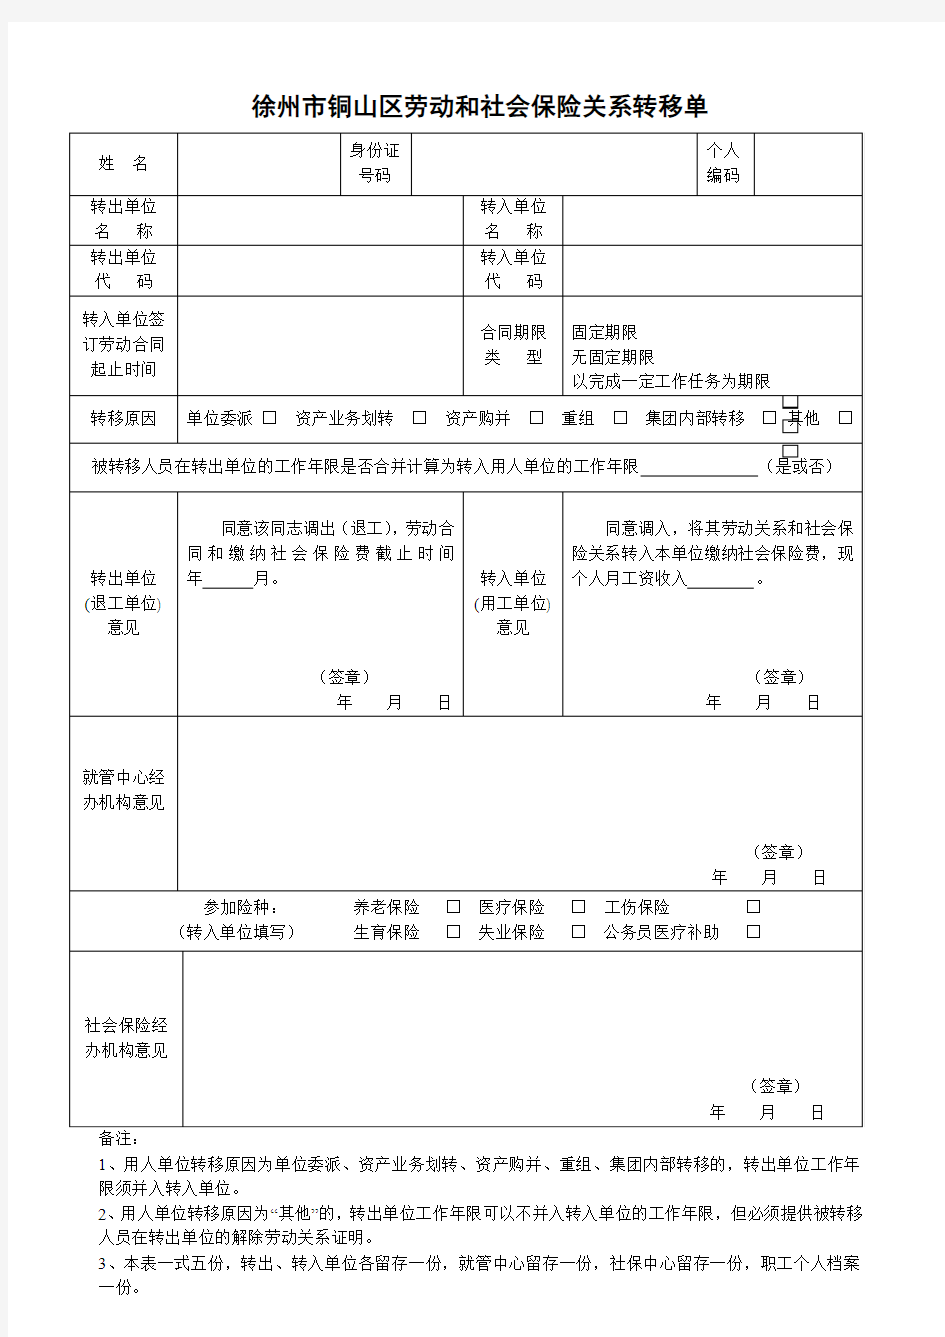 徐州市铜山区劳动和社会保险关系转移单